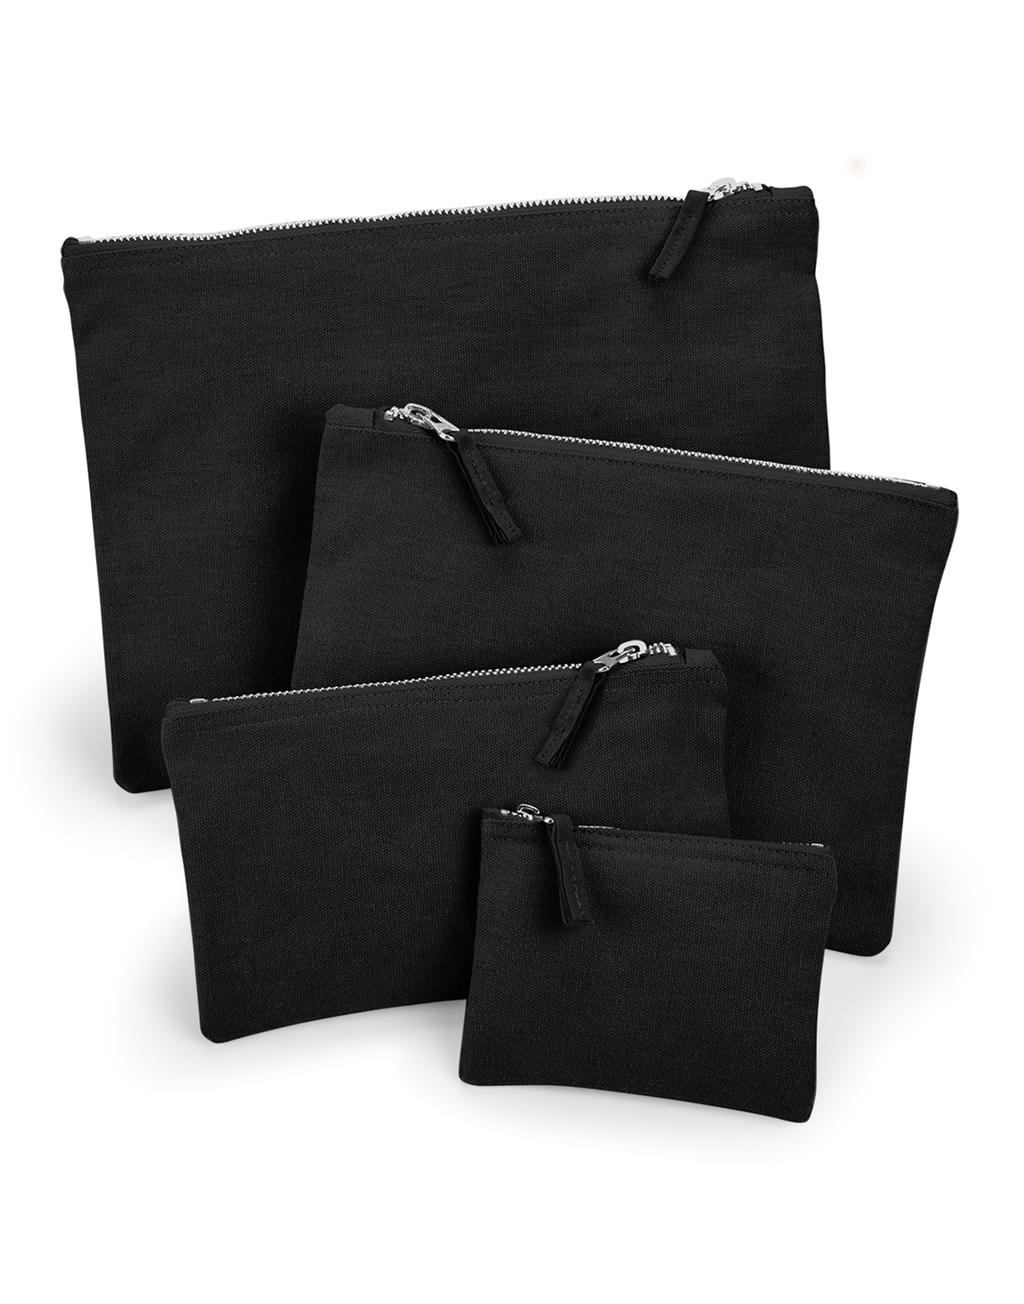  Canvas Accessory Pouch in Farbe Black